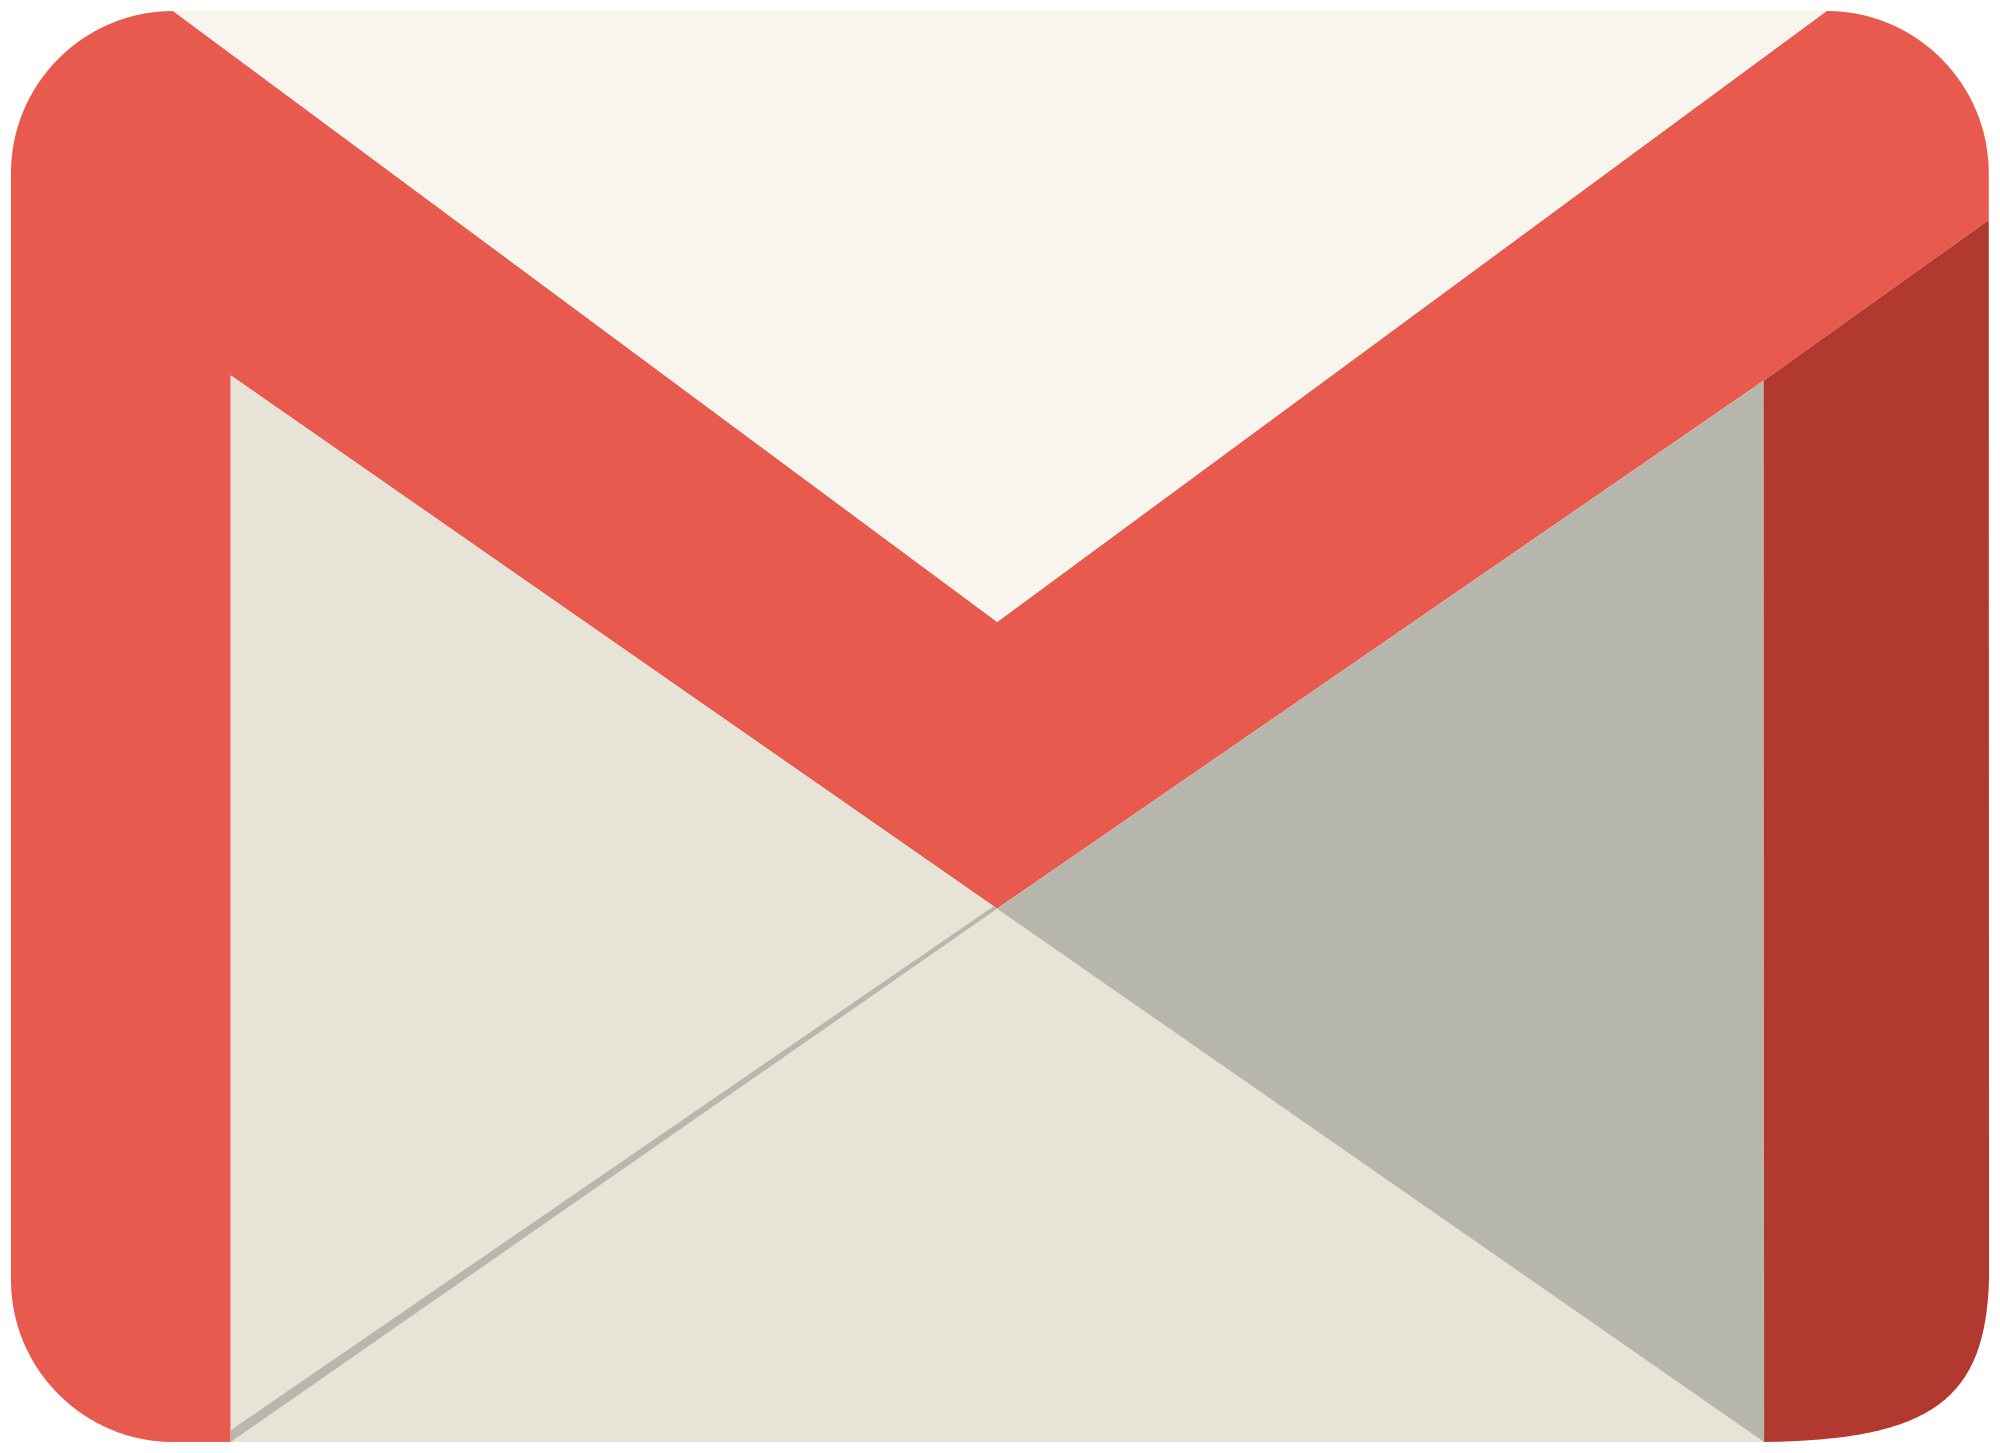 Gmail Meningkatkan Batas Lampiran Jadi 50MB Untuk Email Masuk